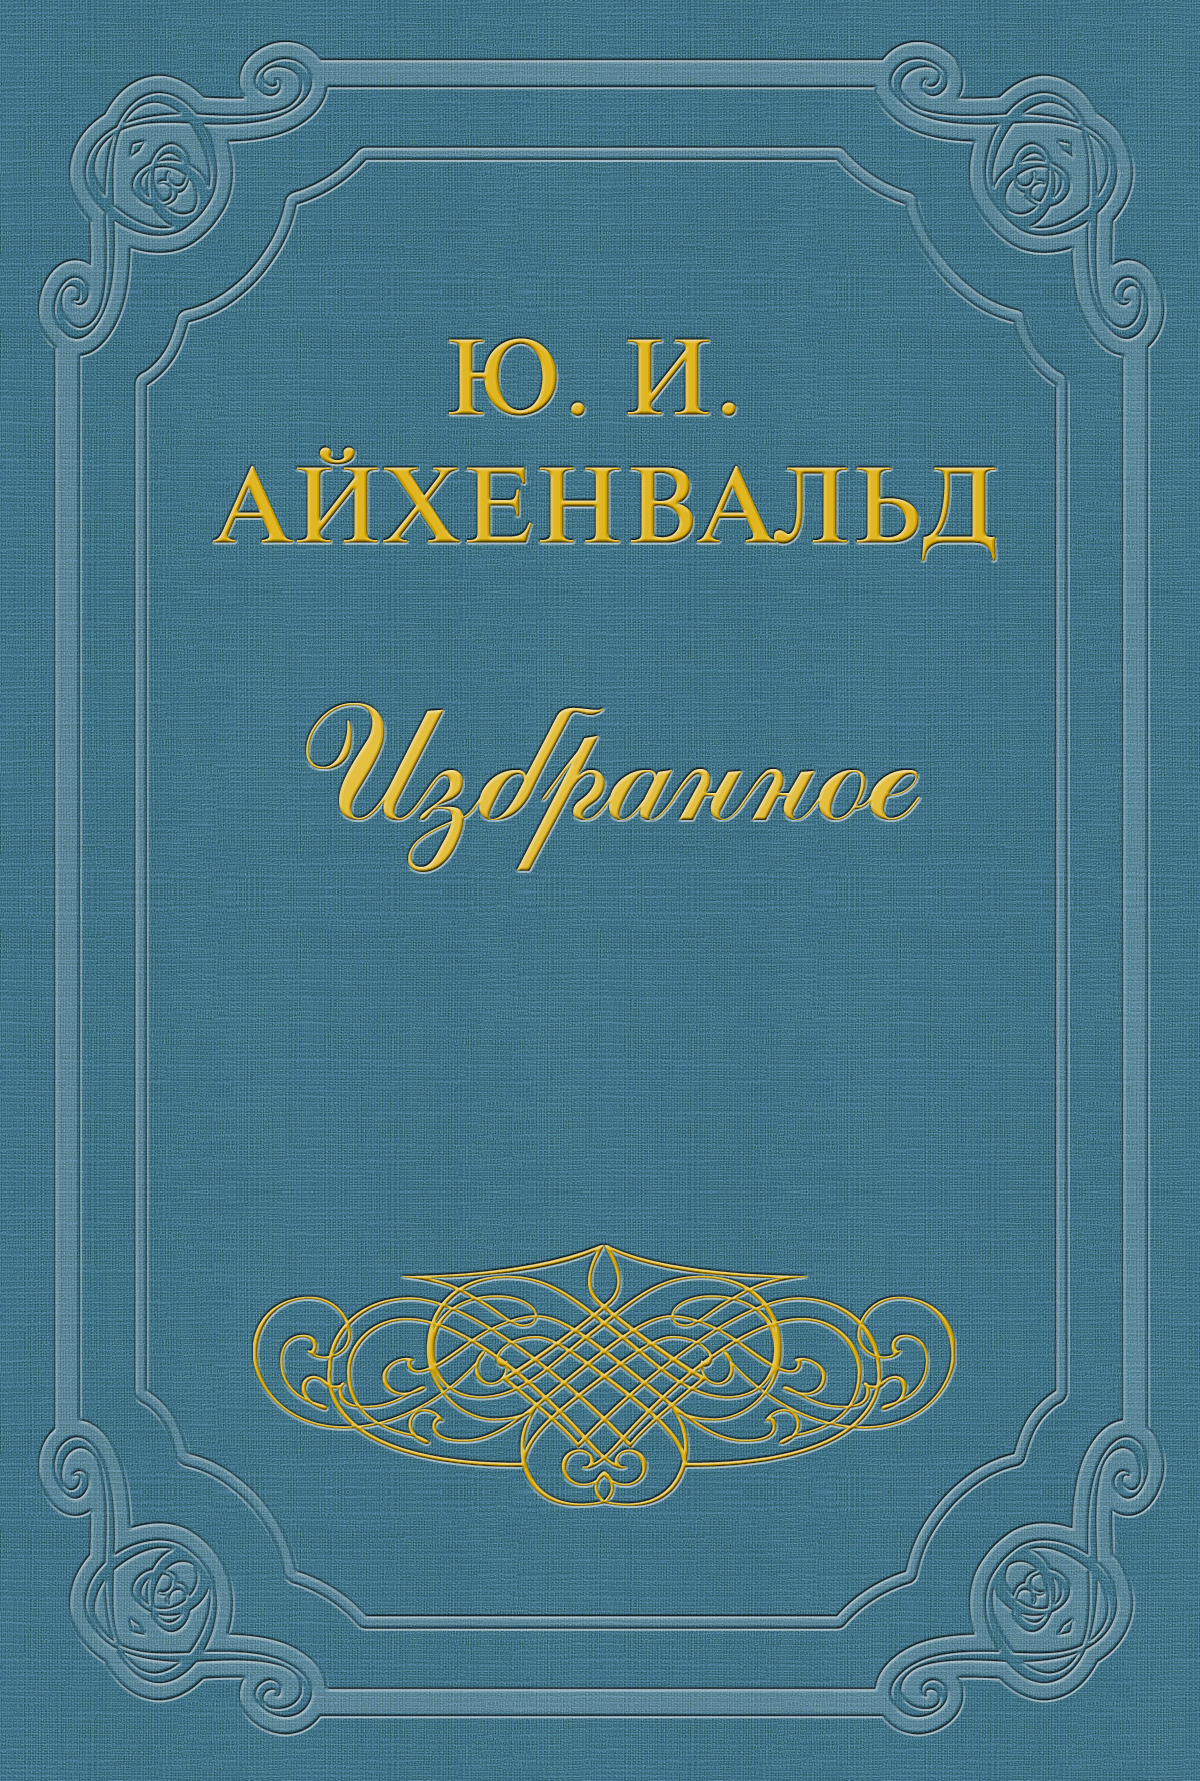 Книга Батюшков из серии , созданная Юлий Айхенвальд, может относится к жанру Критика. Стоимость книги Батюшков  с идентификатором 2593875 составляет 5.99 руб.